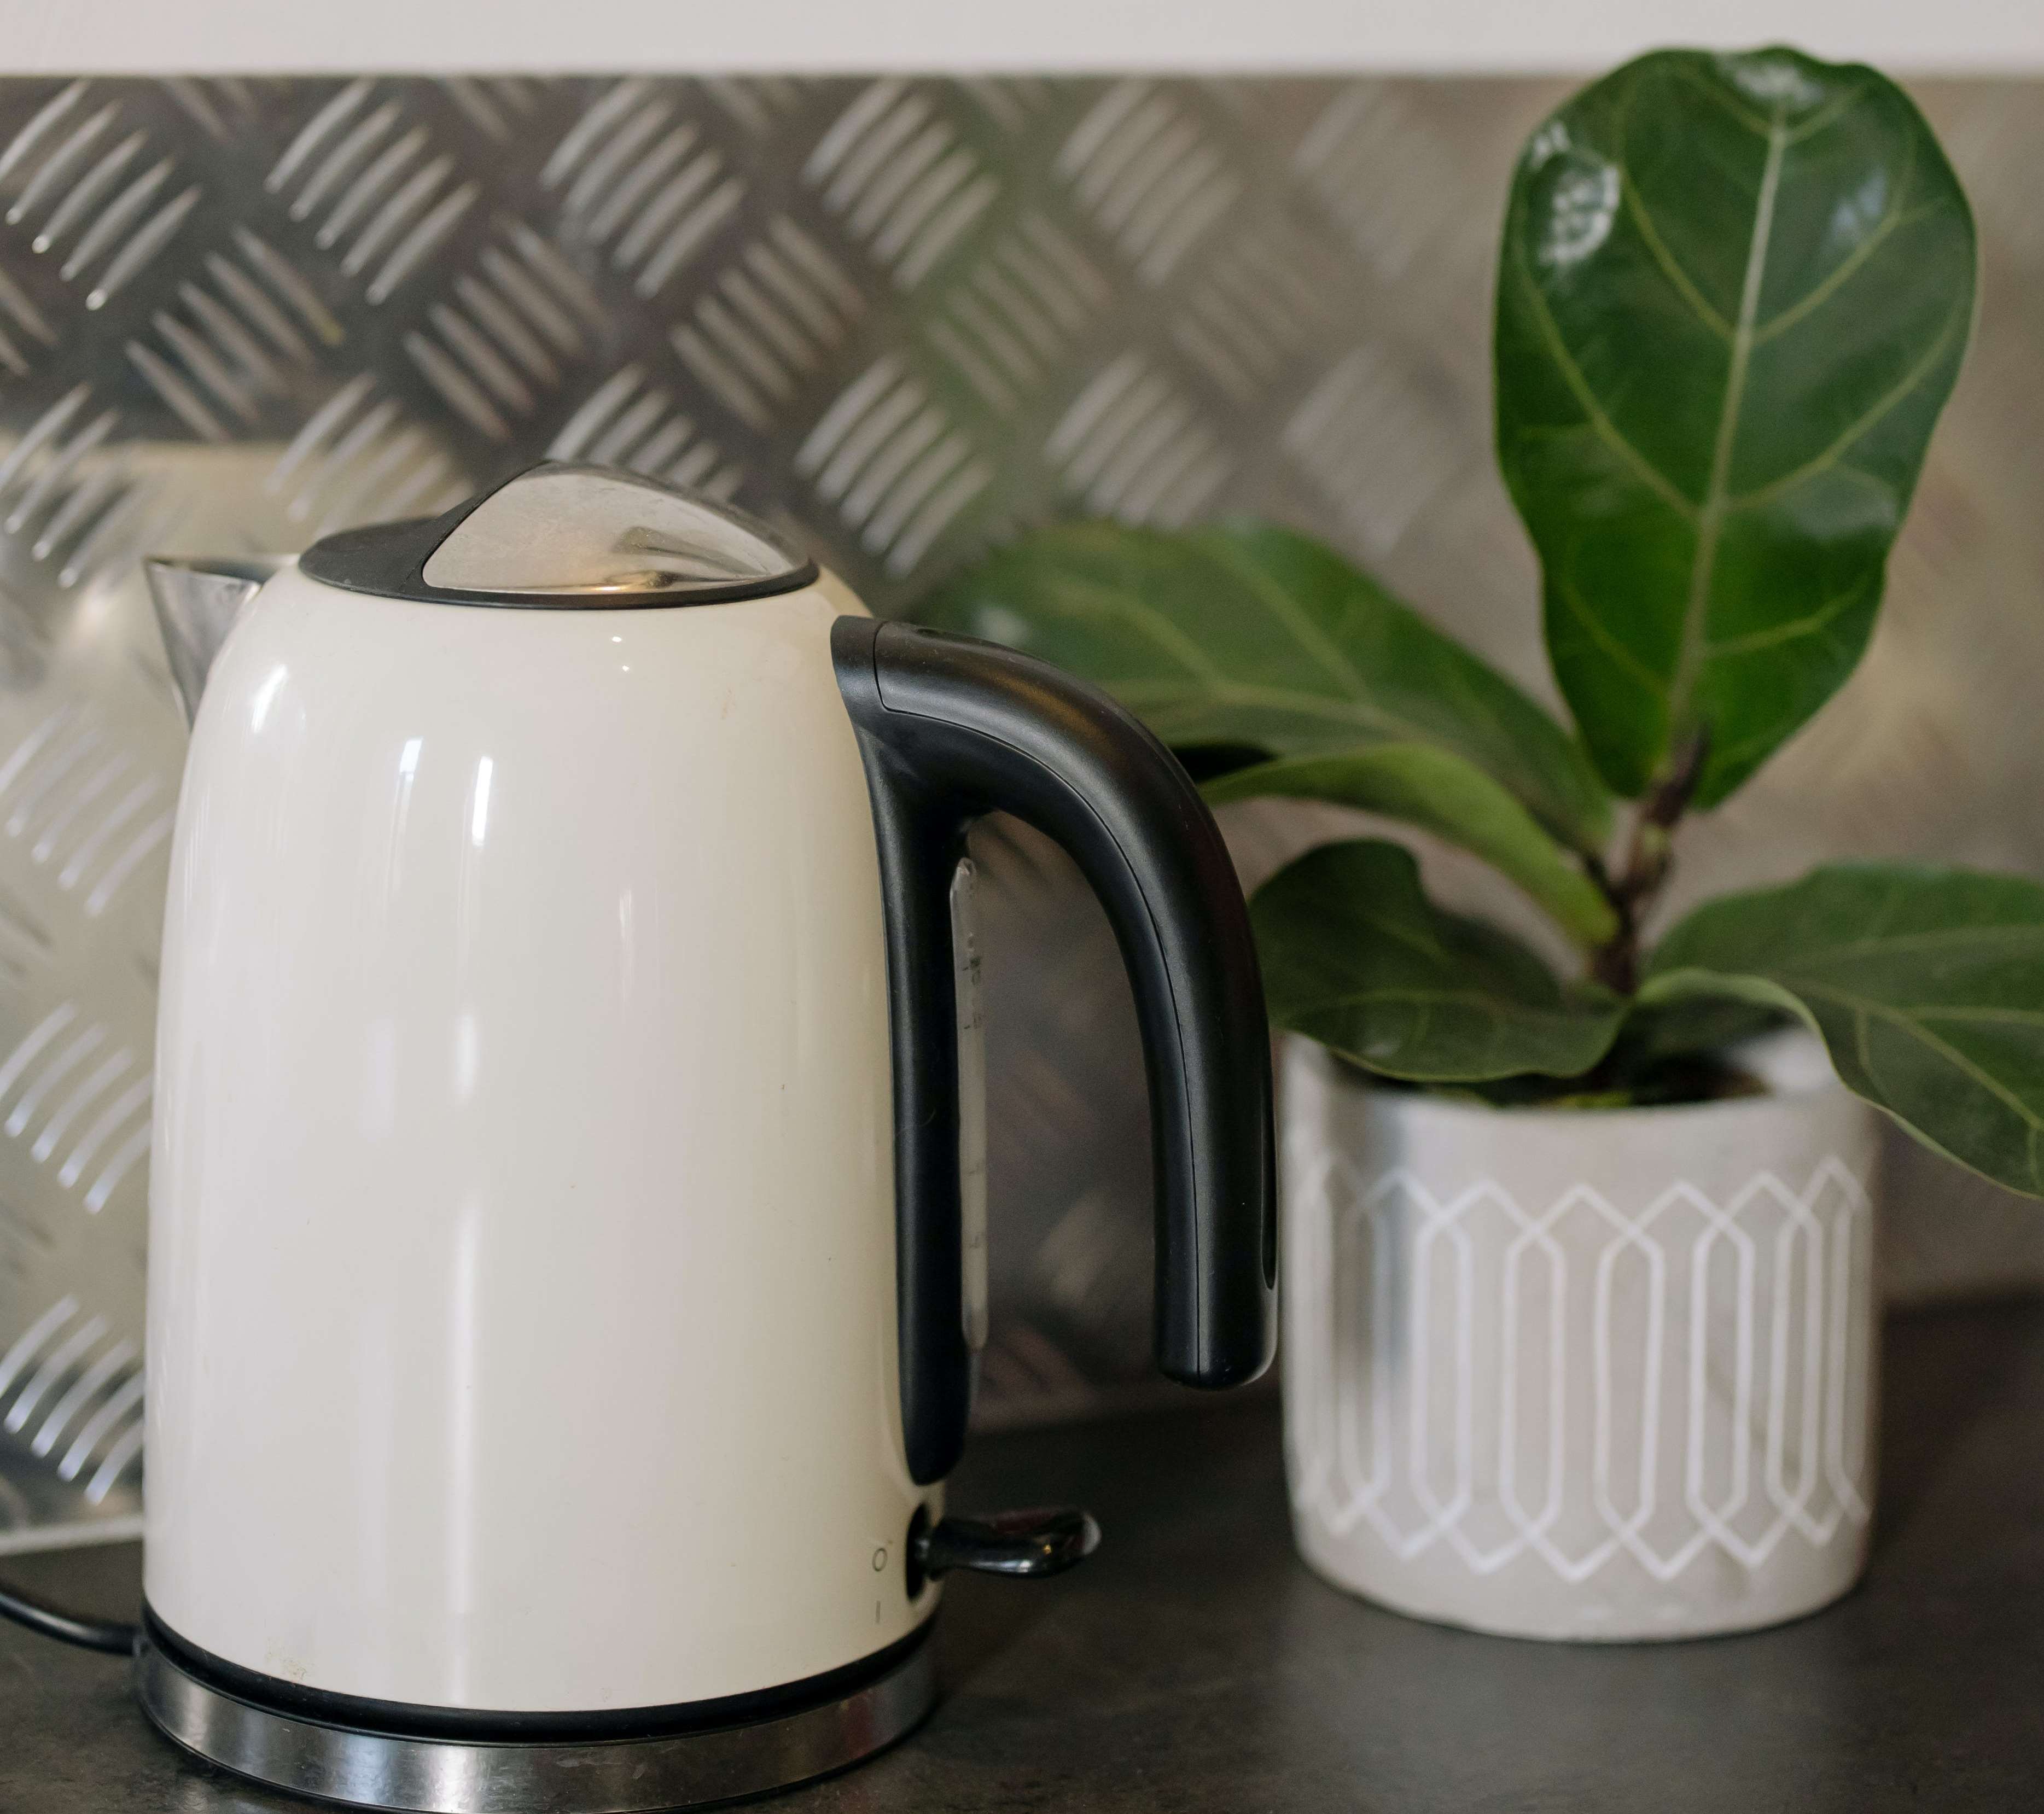 Як очистити чайник від накипу: прості та ефективні способи видалити наліт